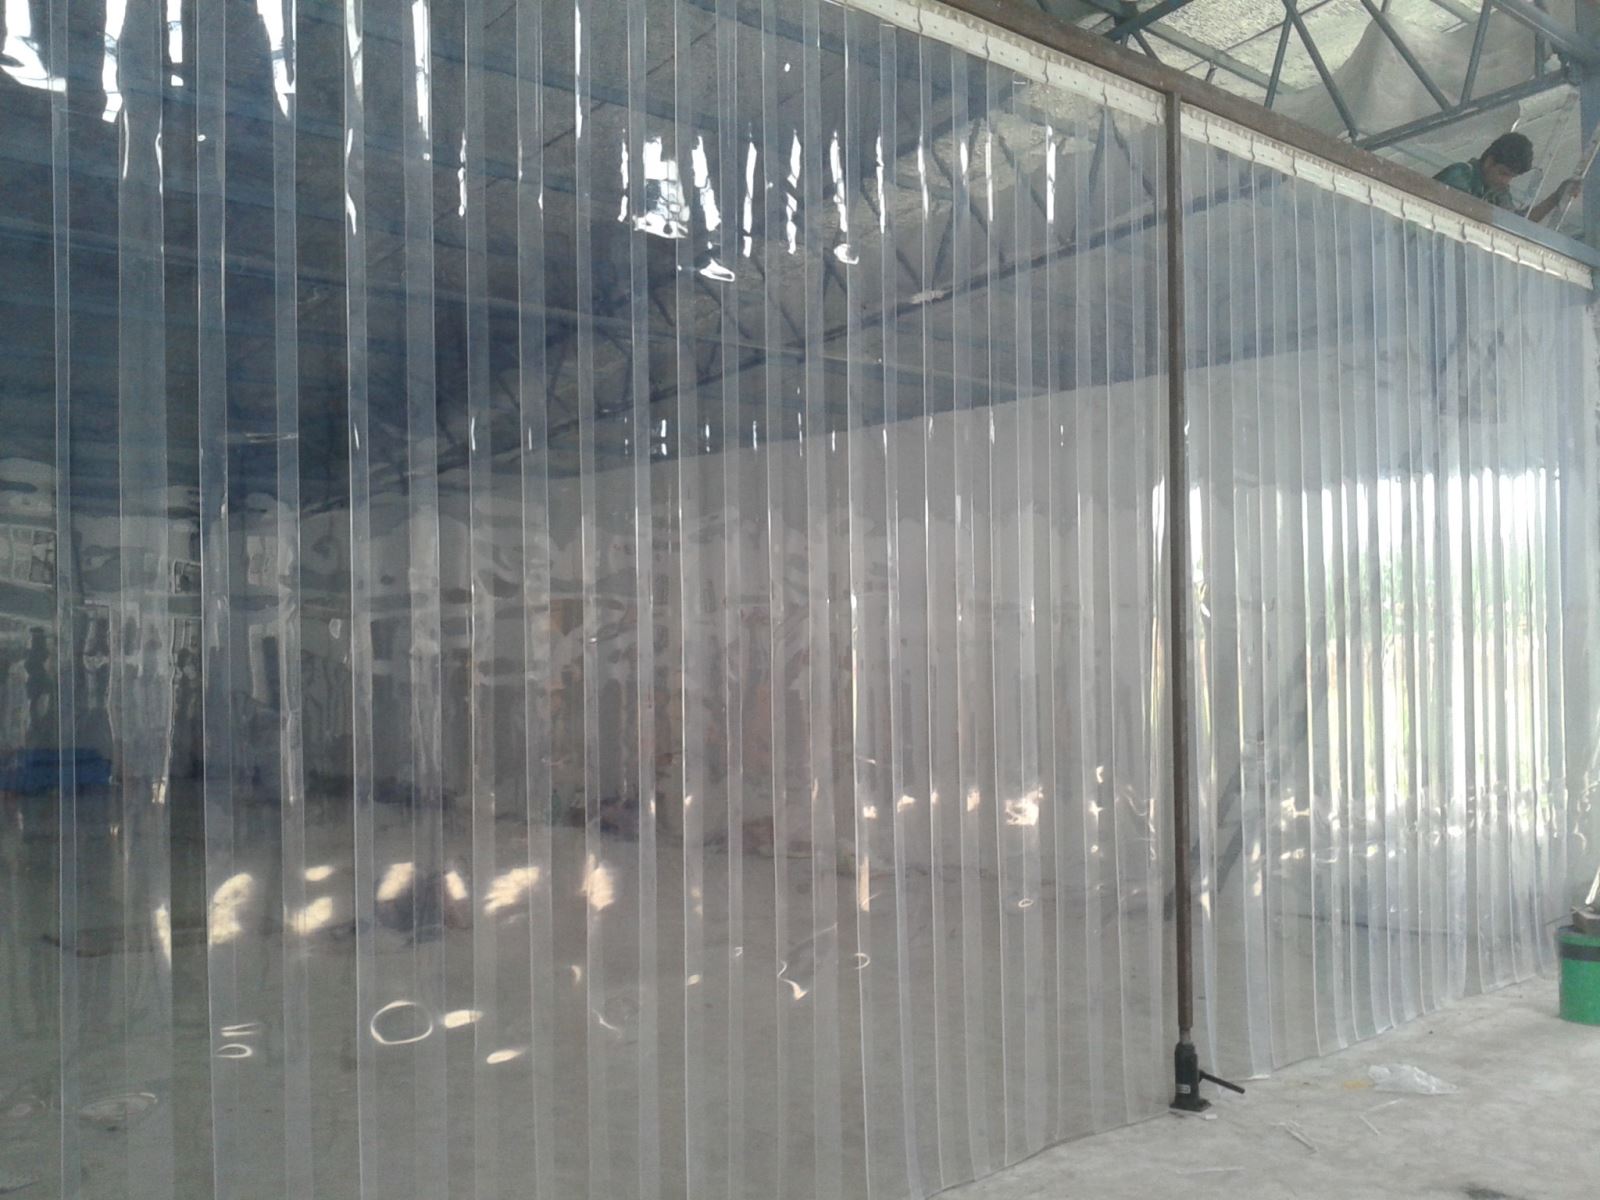 Thiết kế rèm ngăn lạnh PVC hữu dụng cho cuộc sống hiện đại.